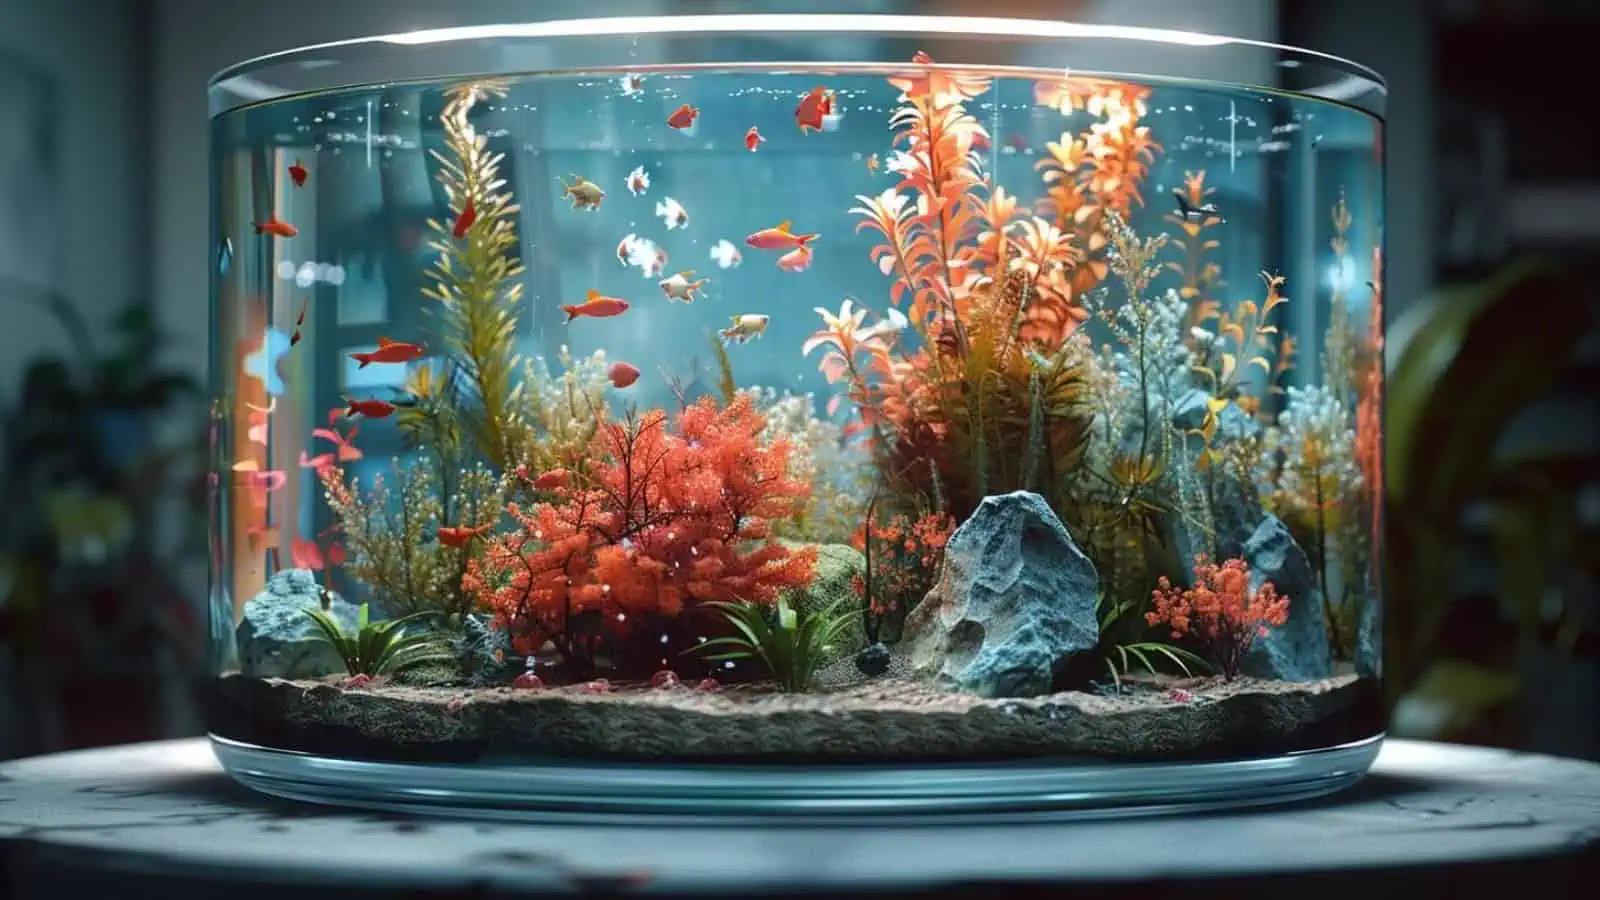 Excessive Aquarium Decoration